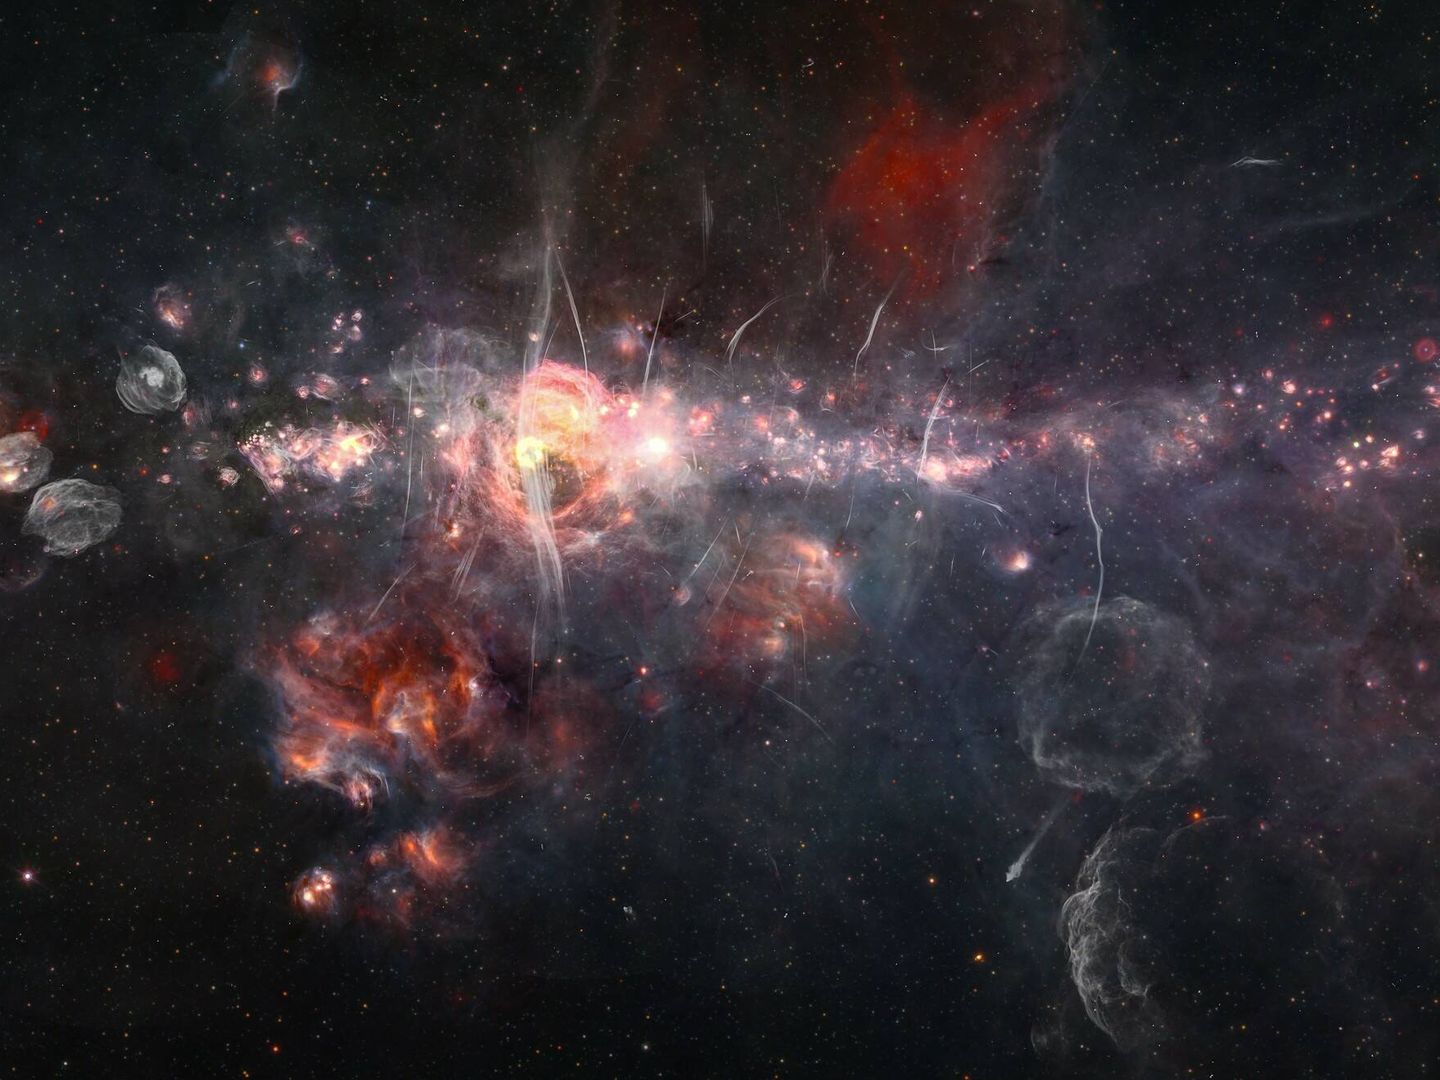 El centro de nuestra galaxia combiando datos del mosaico infrarrojo Spitzer/WISE con el estudio de ondas de radio MeerKAT. (Judy Schmidt)